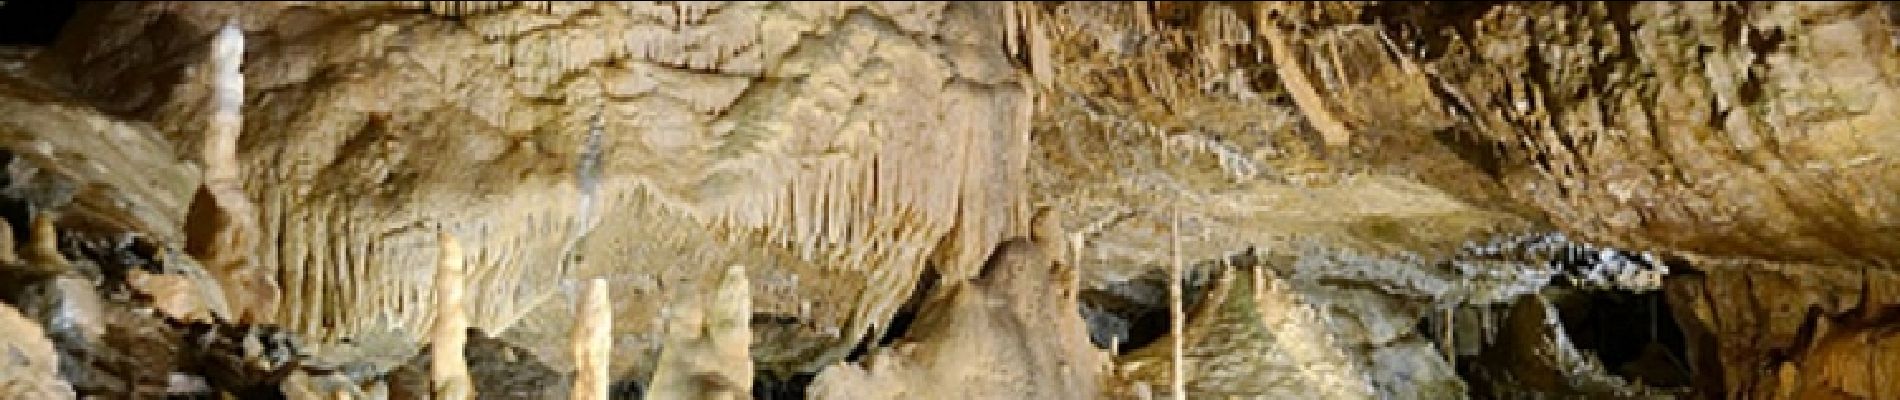 Punto de interés Hotton - Grottes de Hotton - Bon plan - A visiter à proximité de la balade - Photo